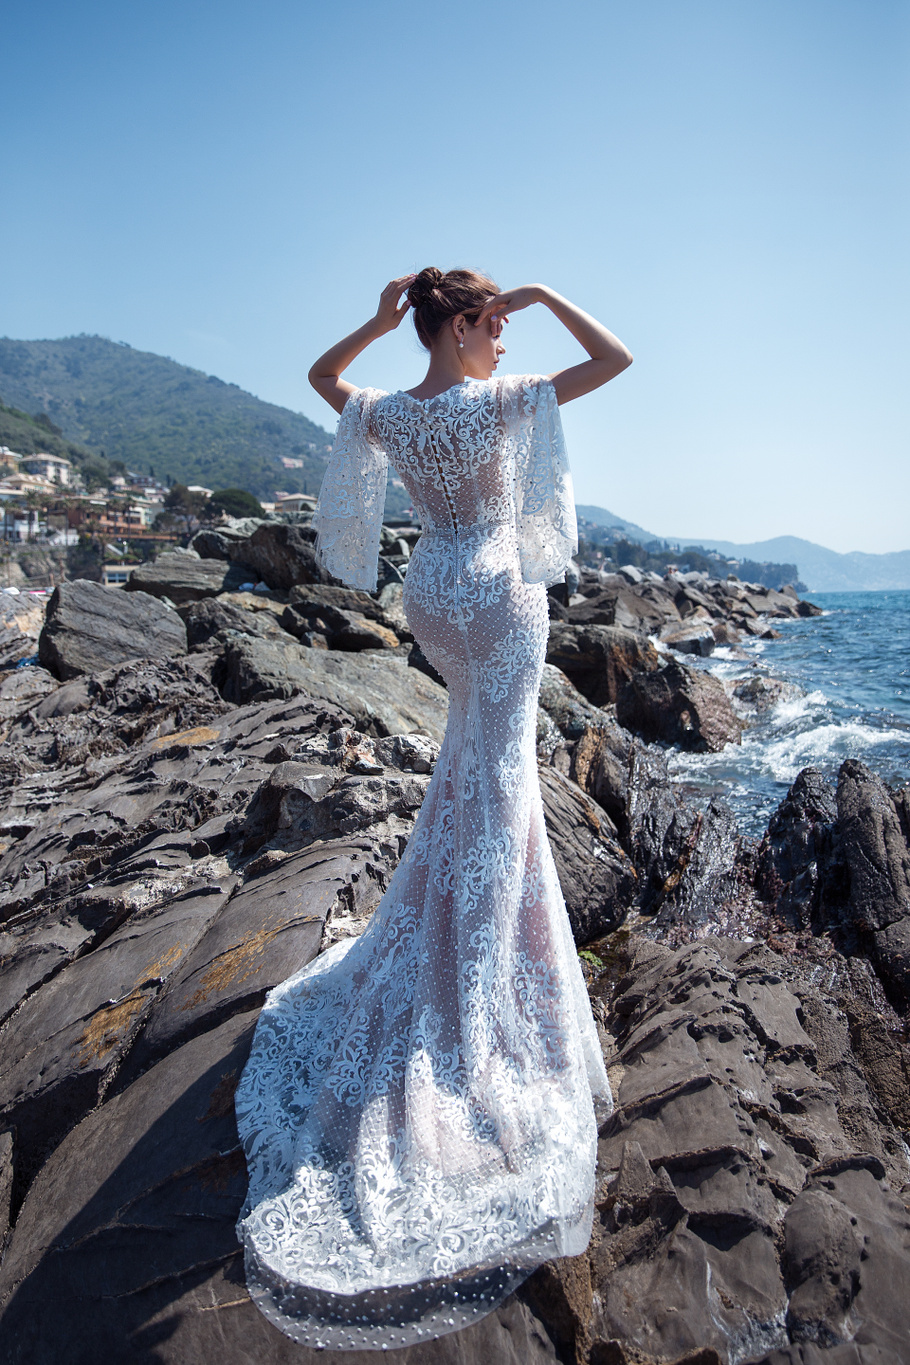 Купить свадебное платье «Олимпия» Анже Этуаль из коллекции 2019 года в интернет-магазине